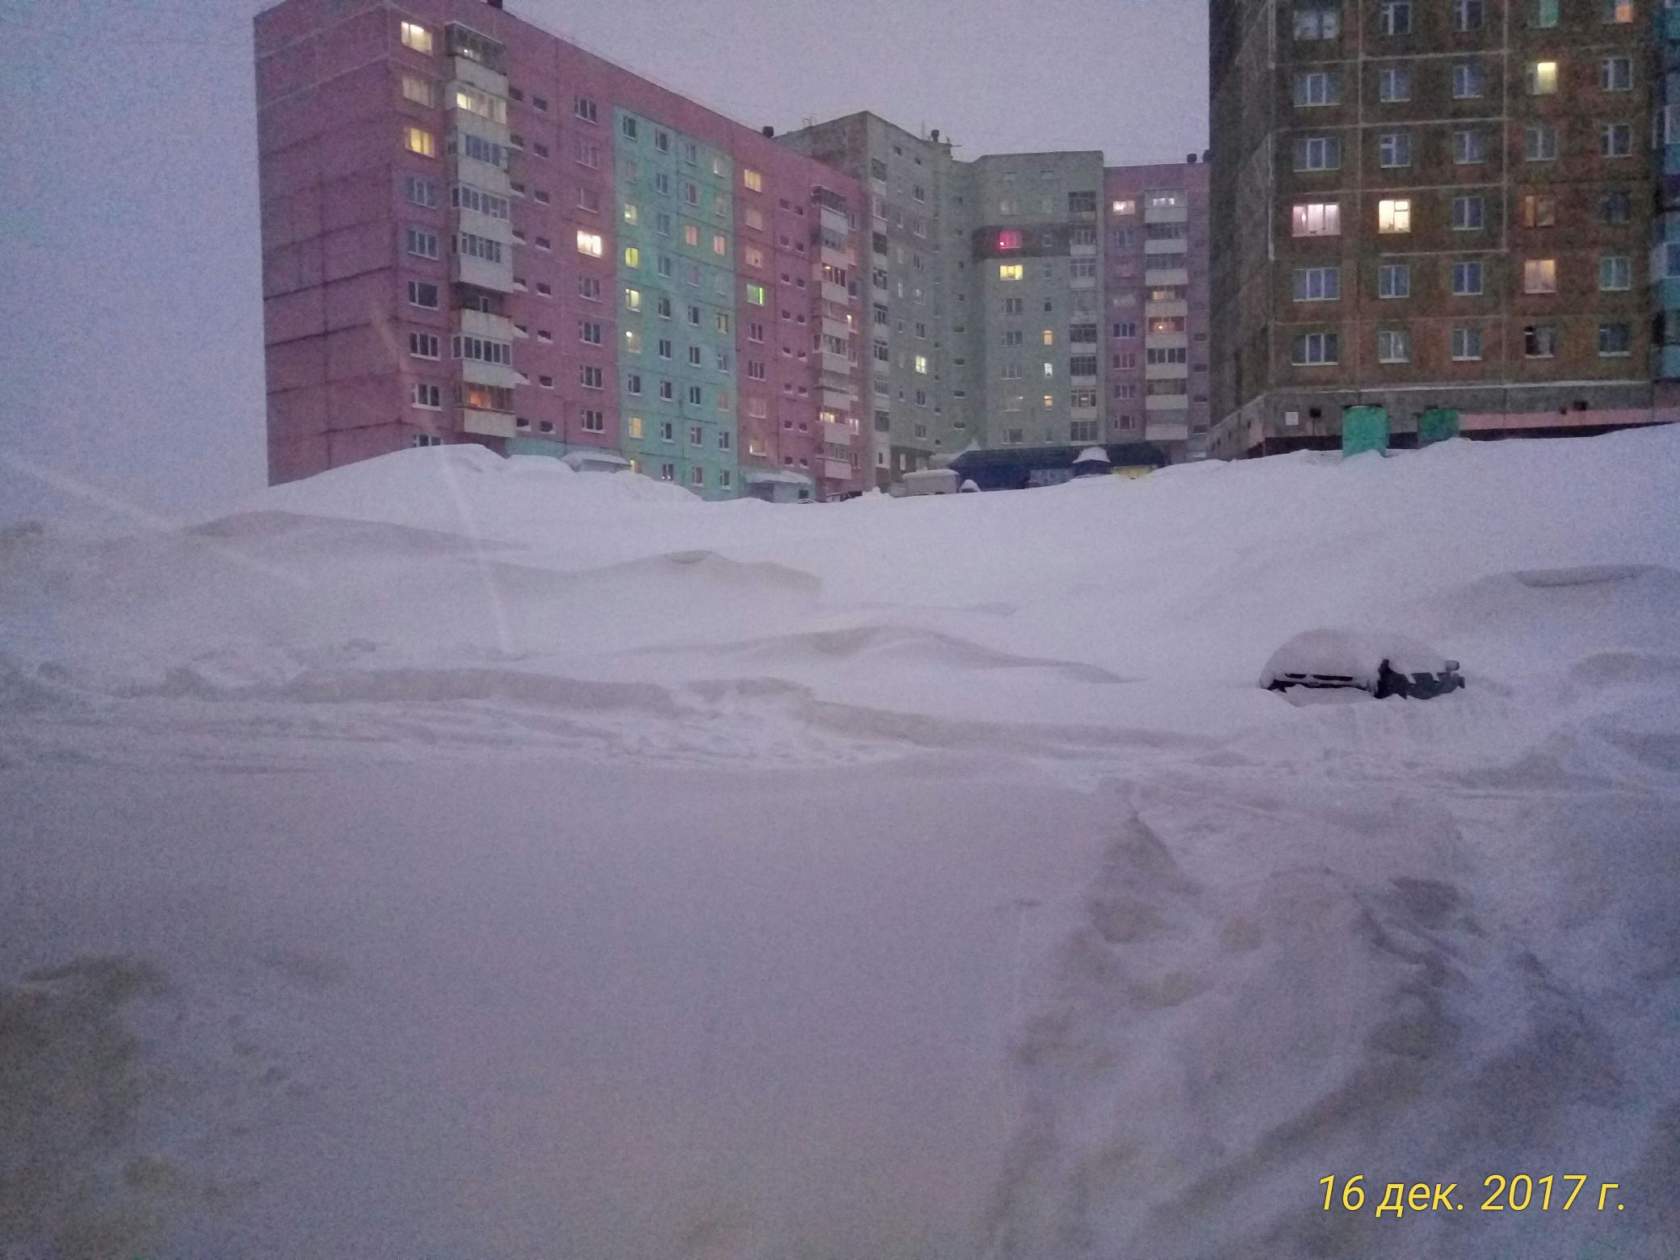 Видео эпичного снегопада в Норильске: водители руками откапывают авто, дома засыпаны снегом